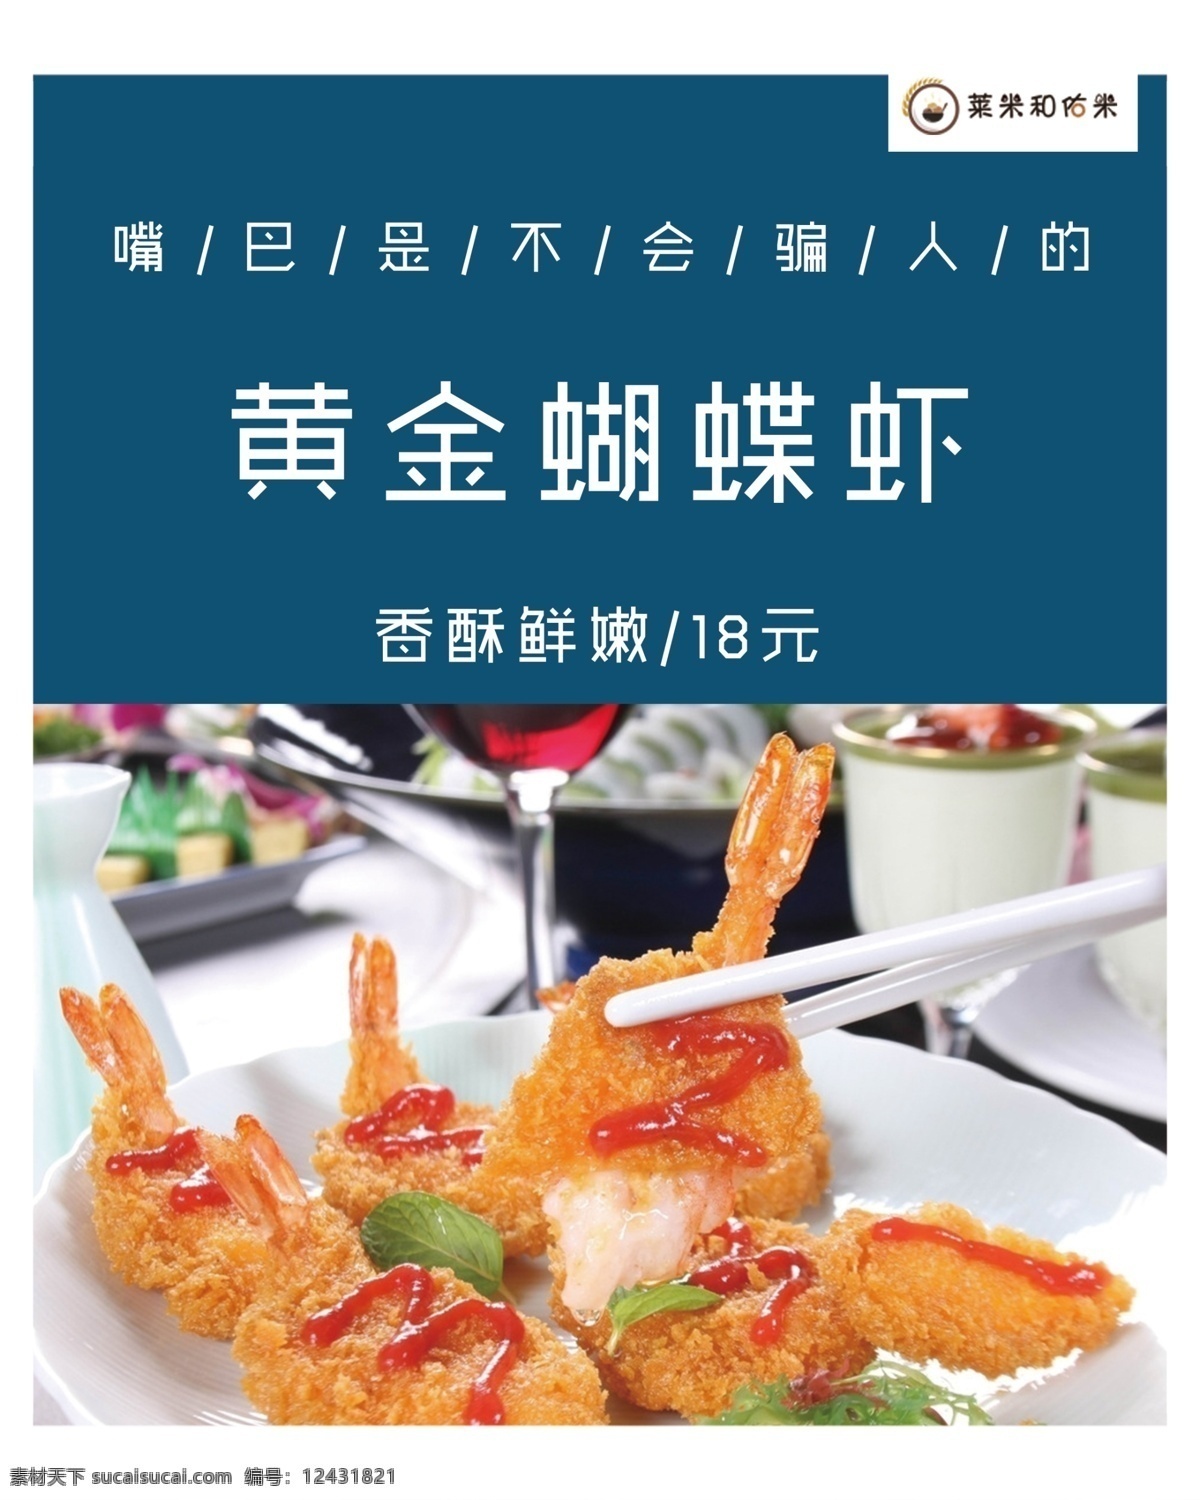 蝴蝶虾菜牌 黄金 蝴蝶虾 餐牌 美食 菜单 菜单菜谱